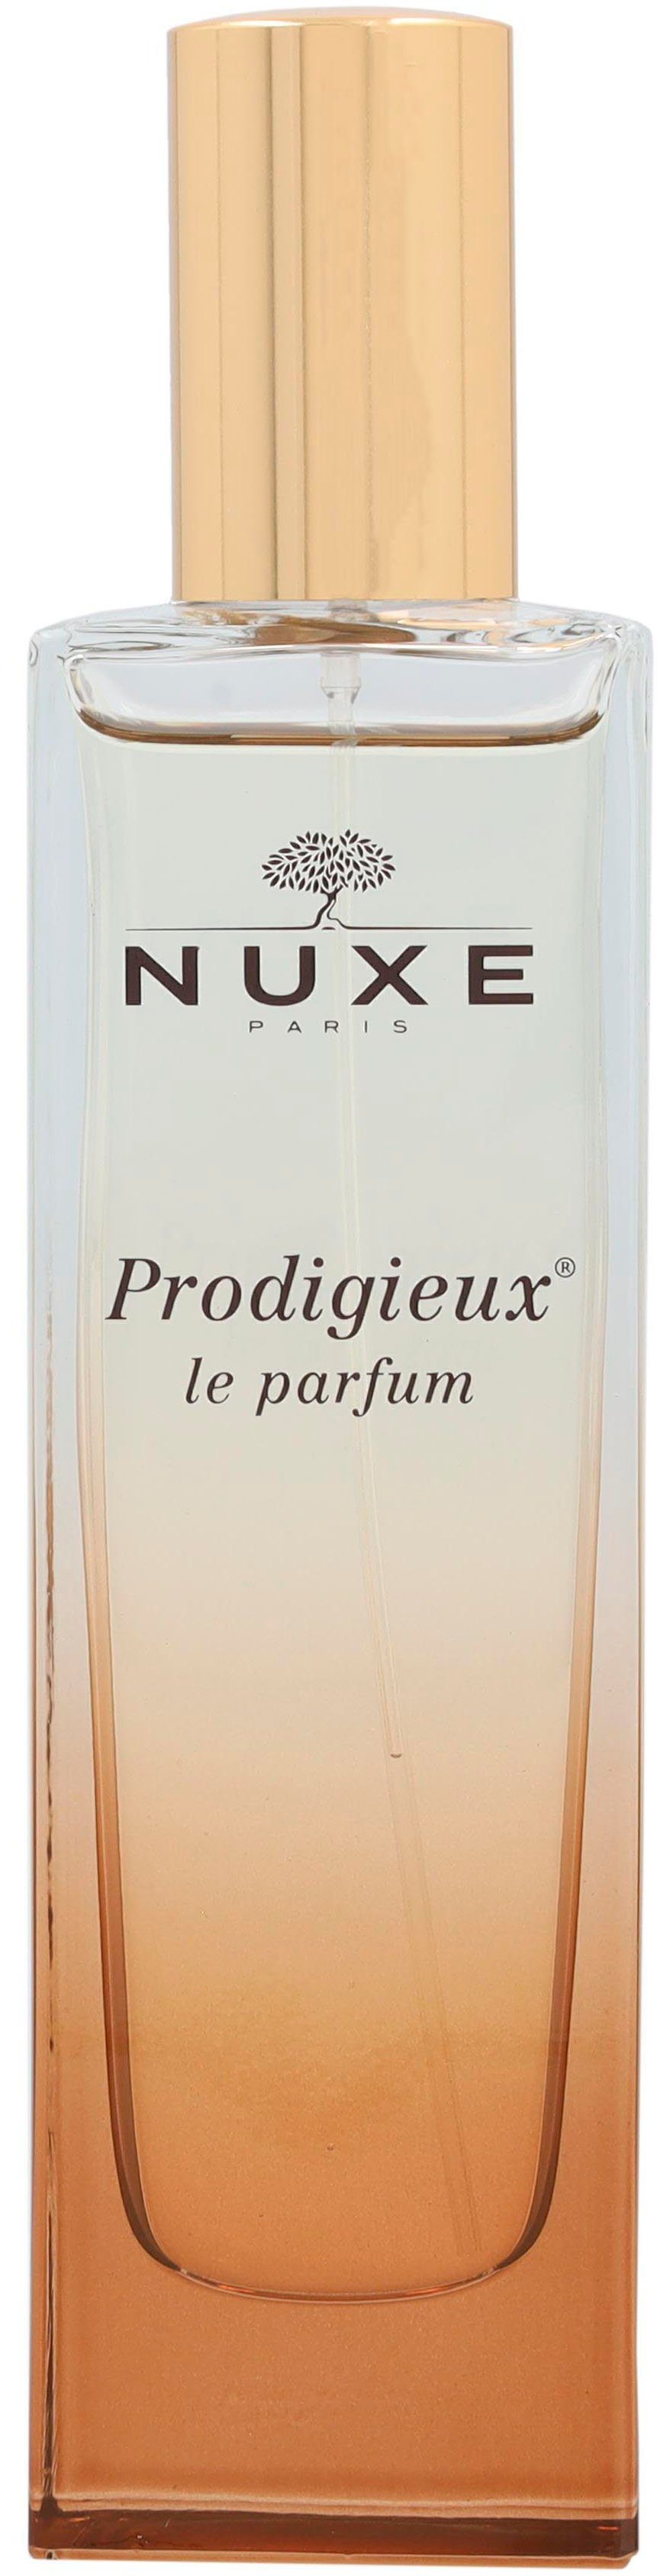 Eau Parfum Le Prodigieux Nuxe de Parfum